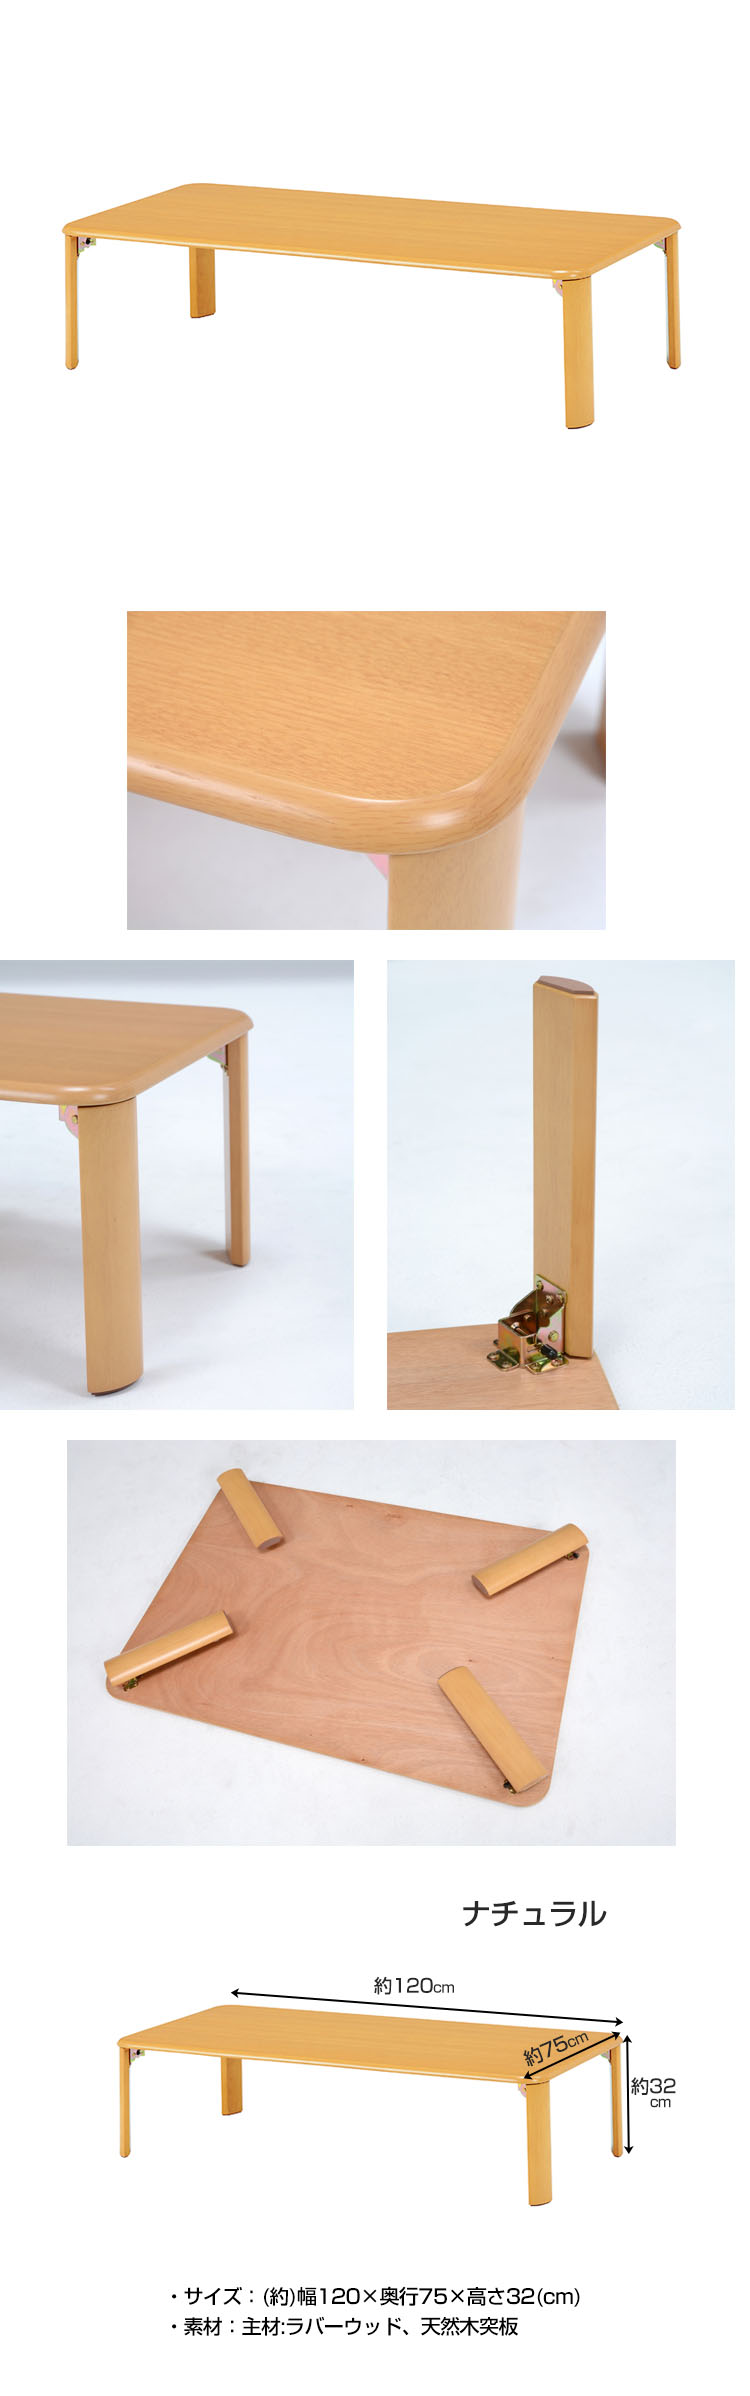 【限定品新品】折れ脚 リビングテーブル 120cm×75cm 脚 折りたたみ ローテーブル ちゃぶ台 木製 おしゃれ テーブル 座卓、ちゃぶ台